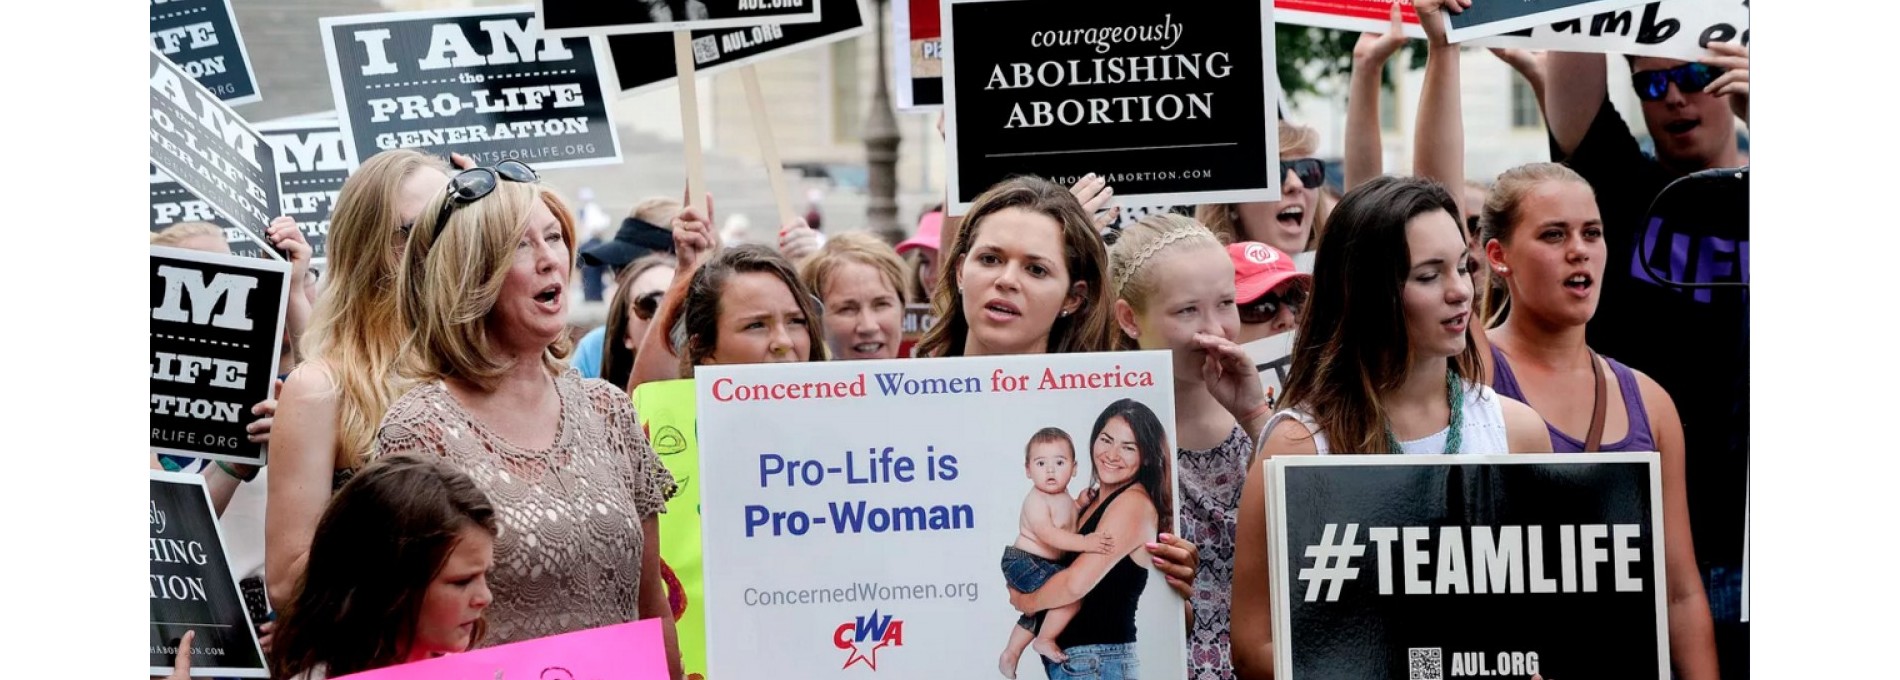 Feminista e contra o aborto?